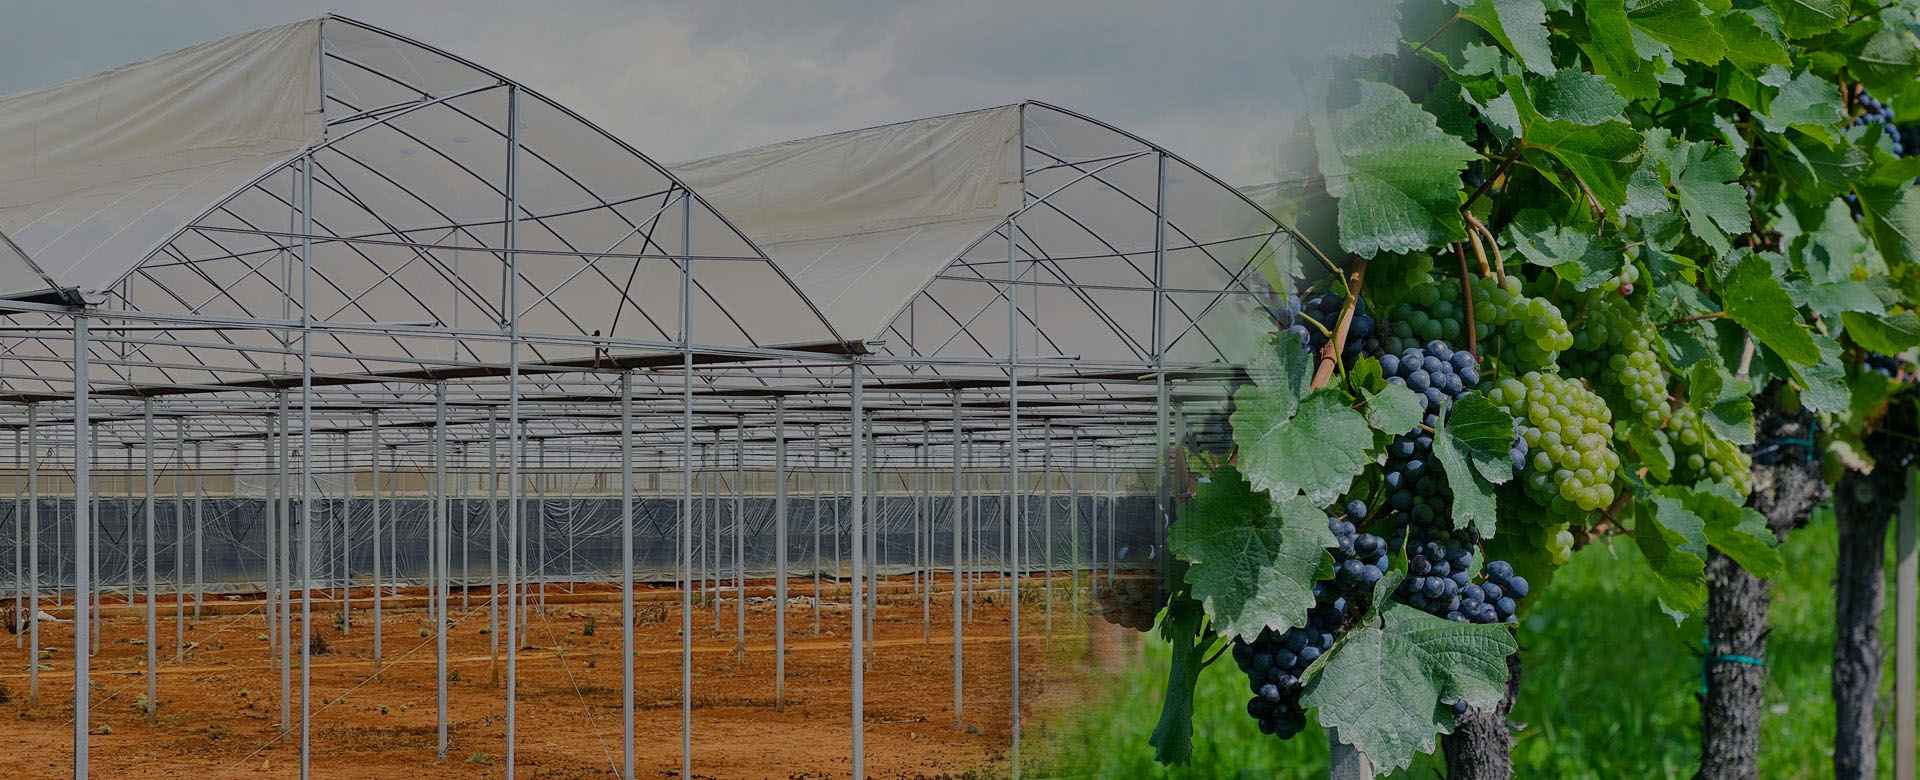 cultiver des tentes agricoles champignons film plastique tunnel à effet de  serre structure à vendre